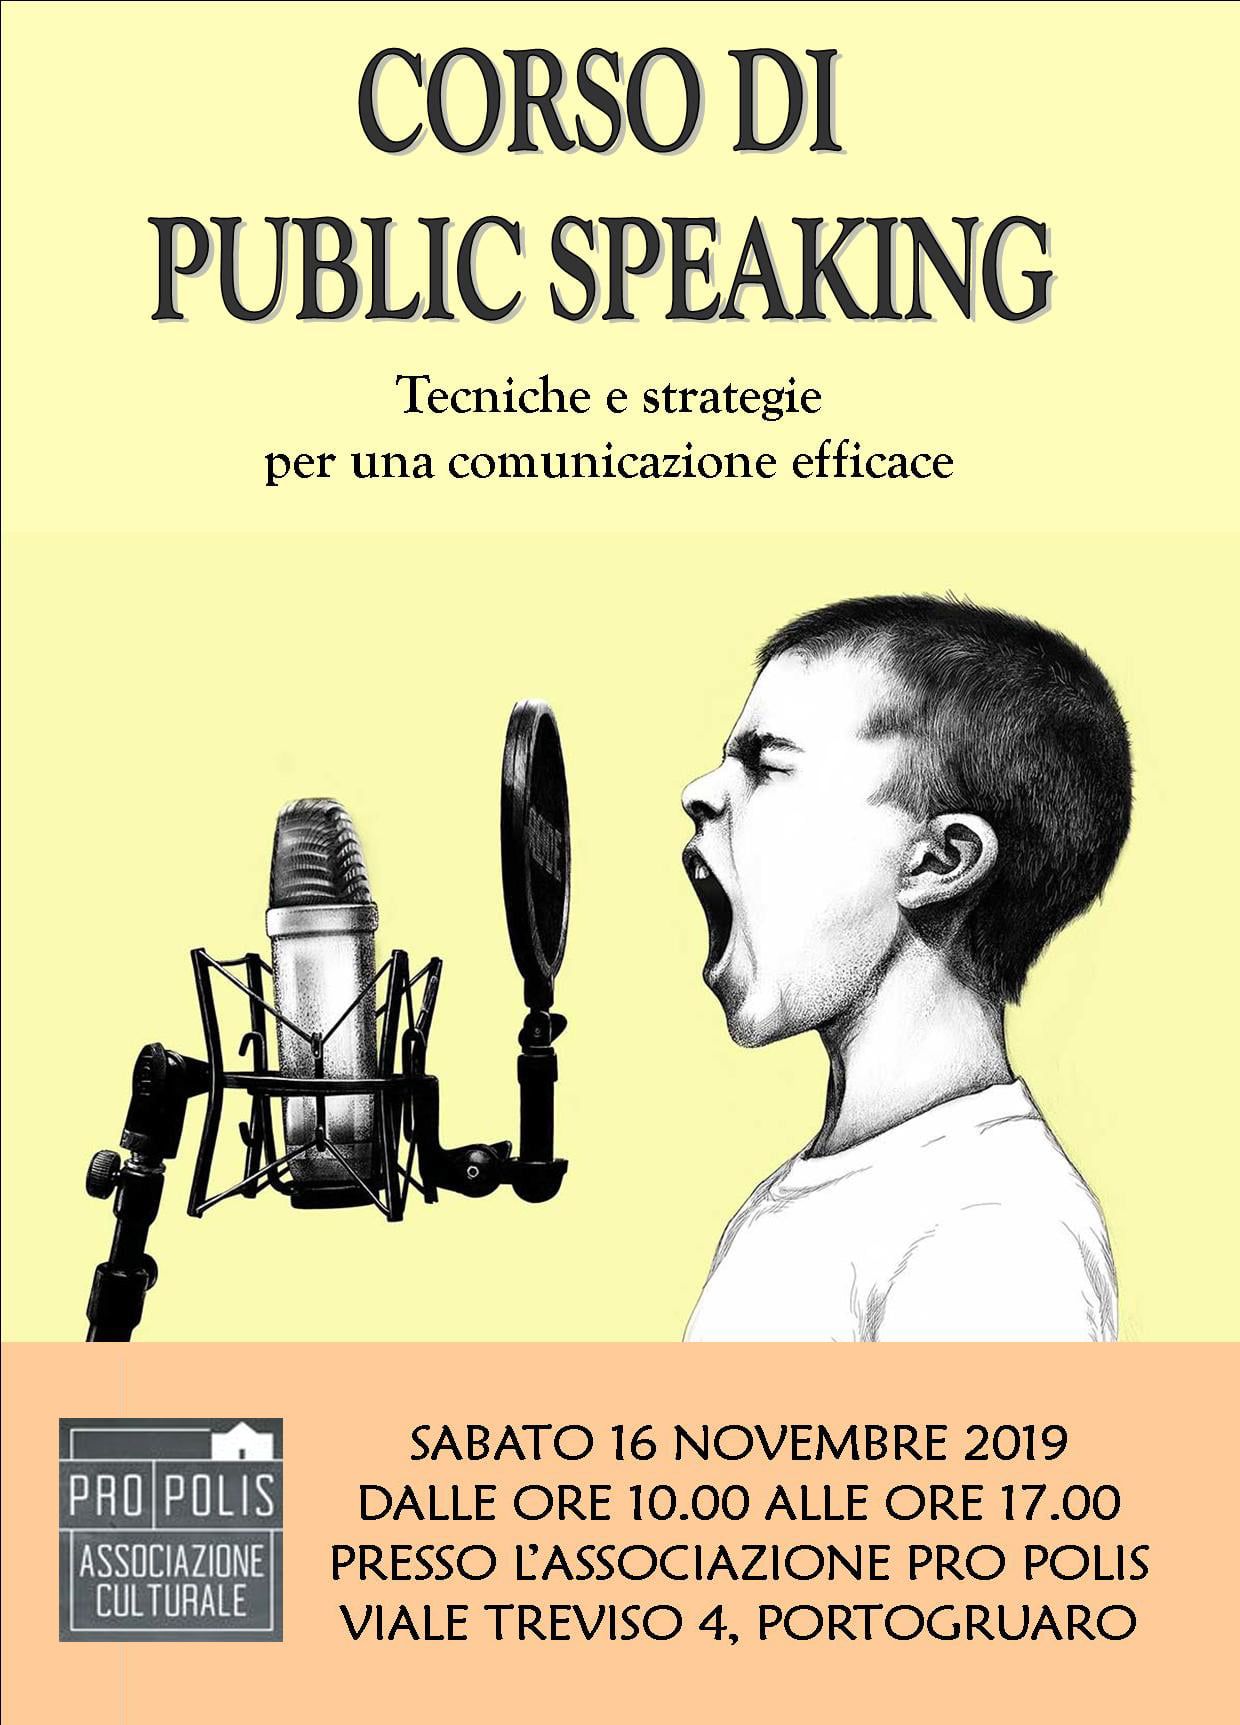 Public speaking: tecniche per una comunicazione efficace